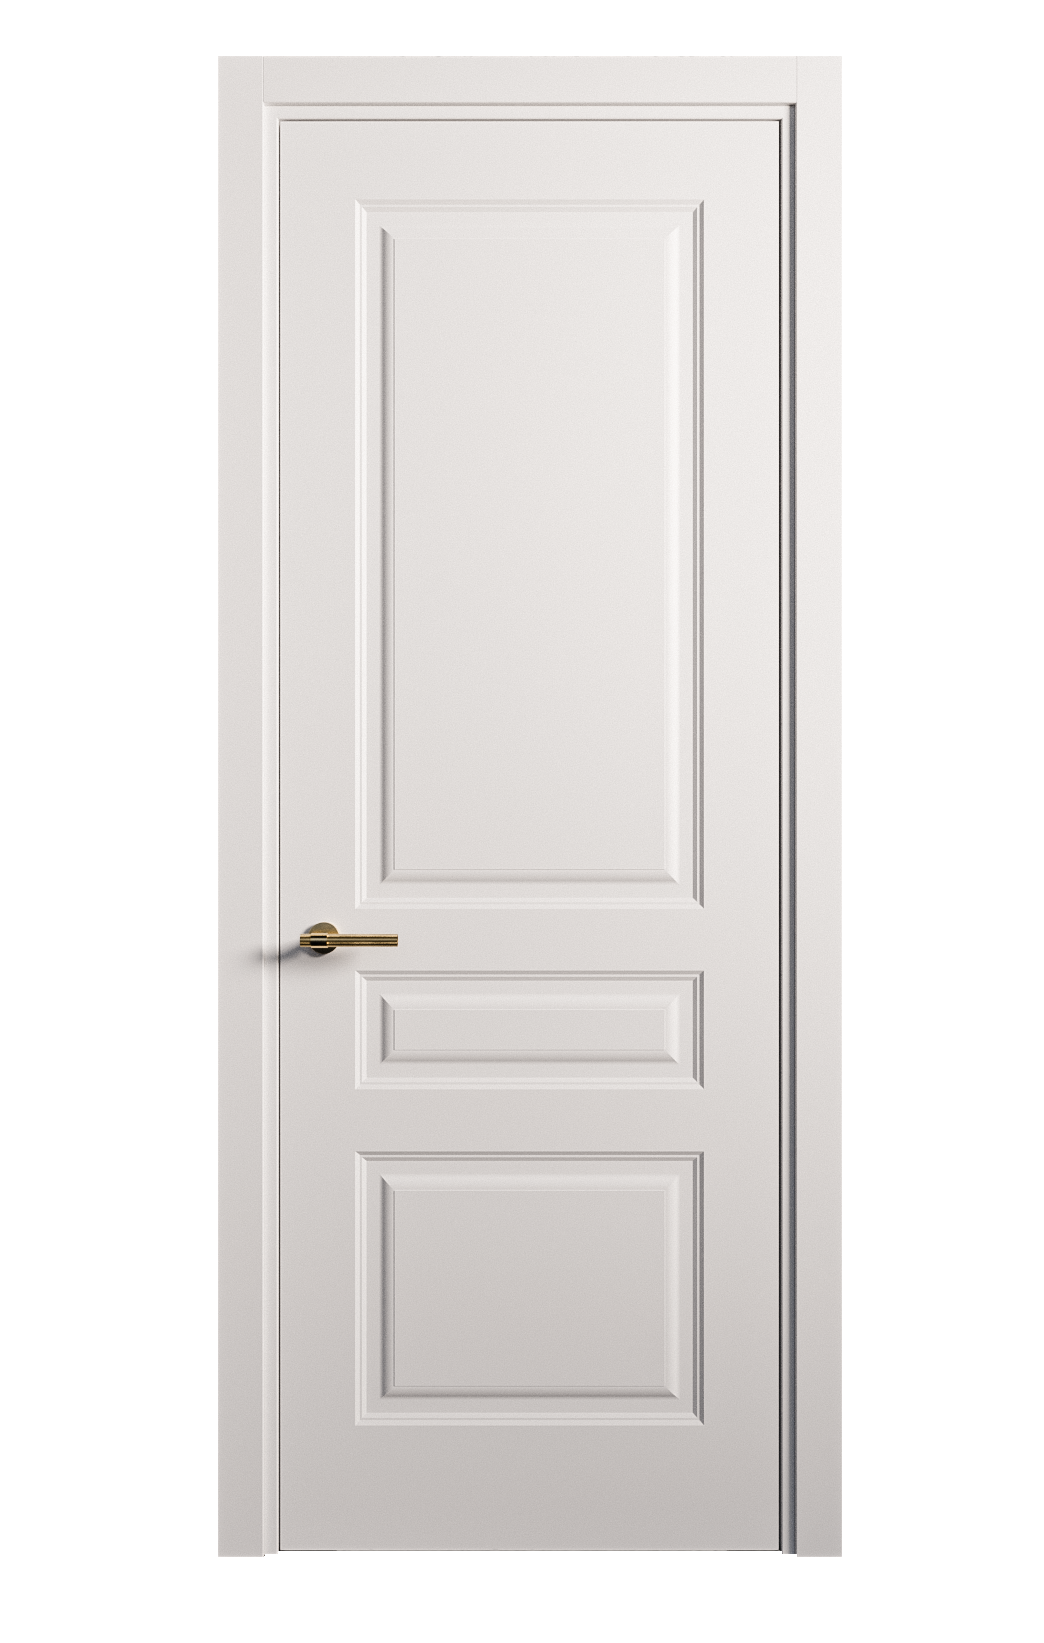 Межкомнатная дверь Вита-2 глухая эмаль ral 9003 26403